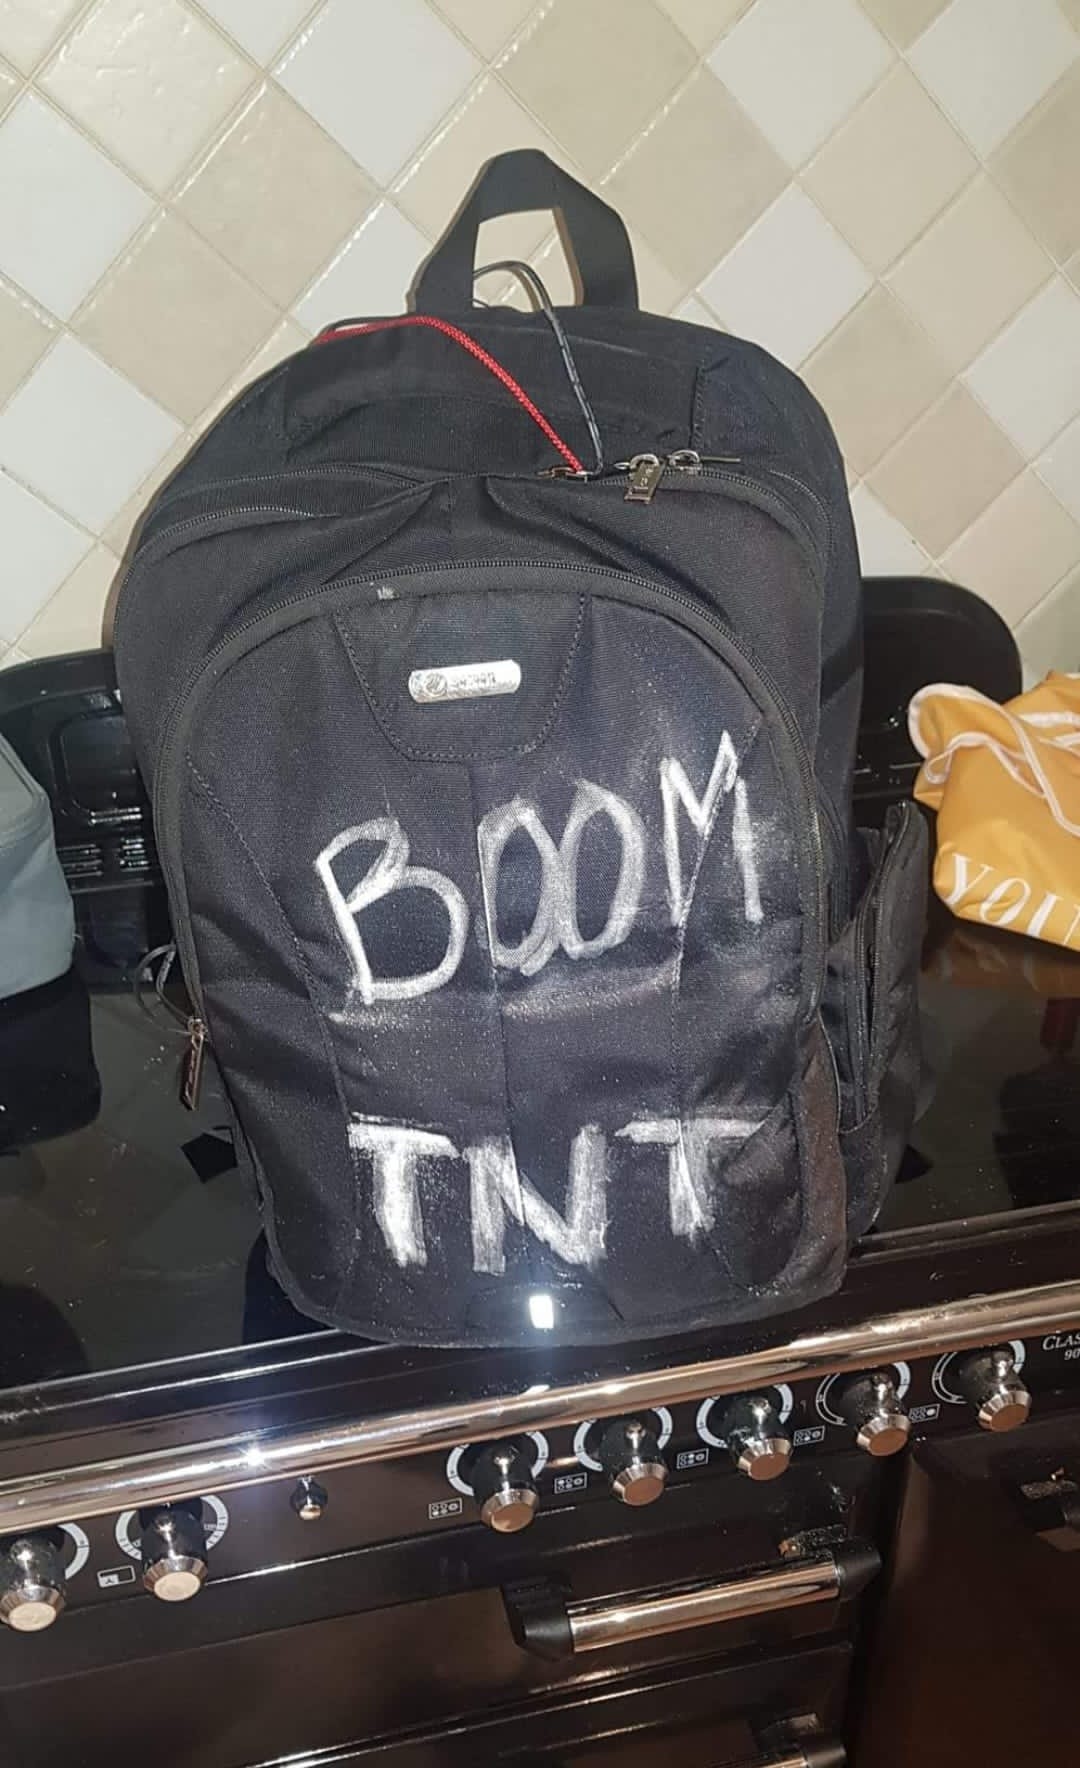 Auf Facebook veröffentlichte er ein Bild einer schwarzen Tasche mit der Aufschrift „Boom“ und „TNT“.